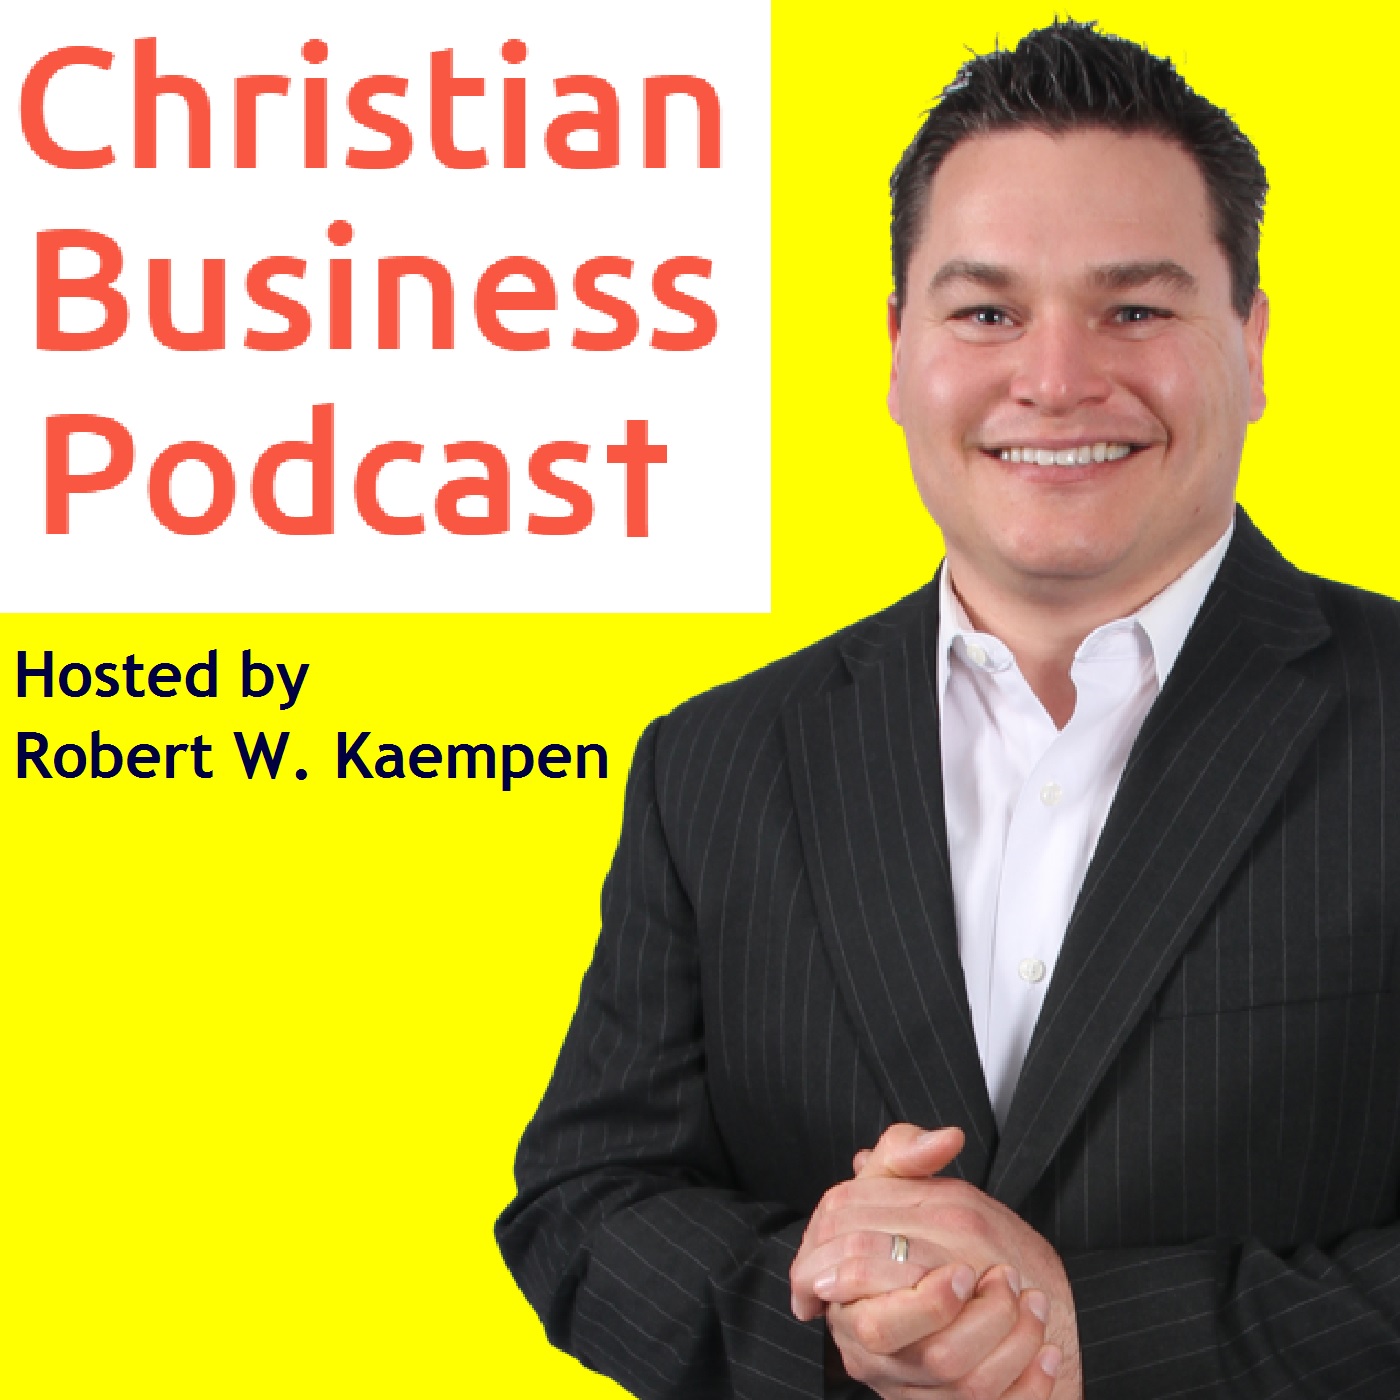 Christian Business Podcast with Robert W. Kaempen